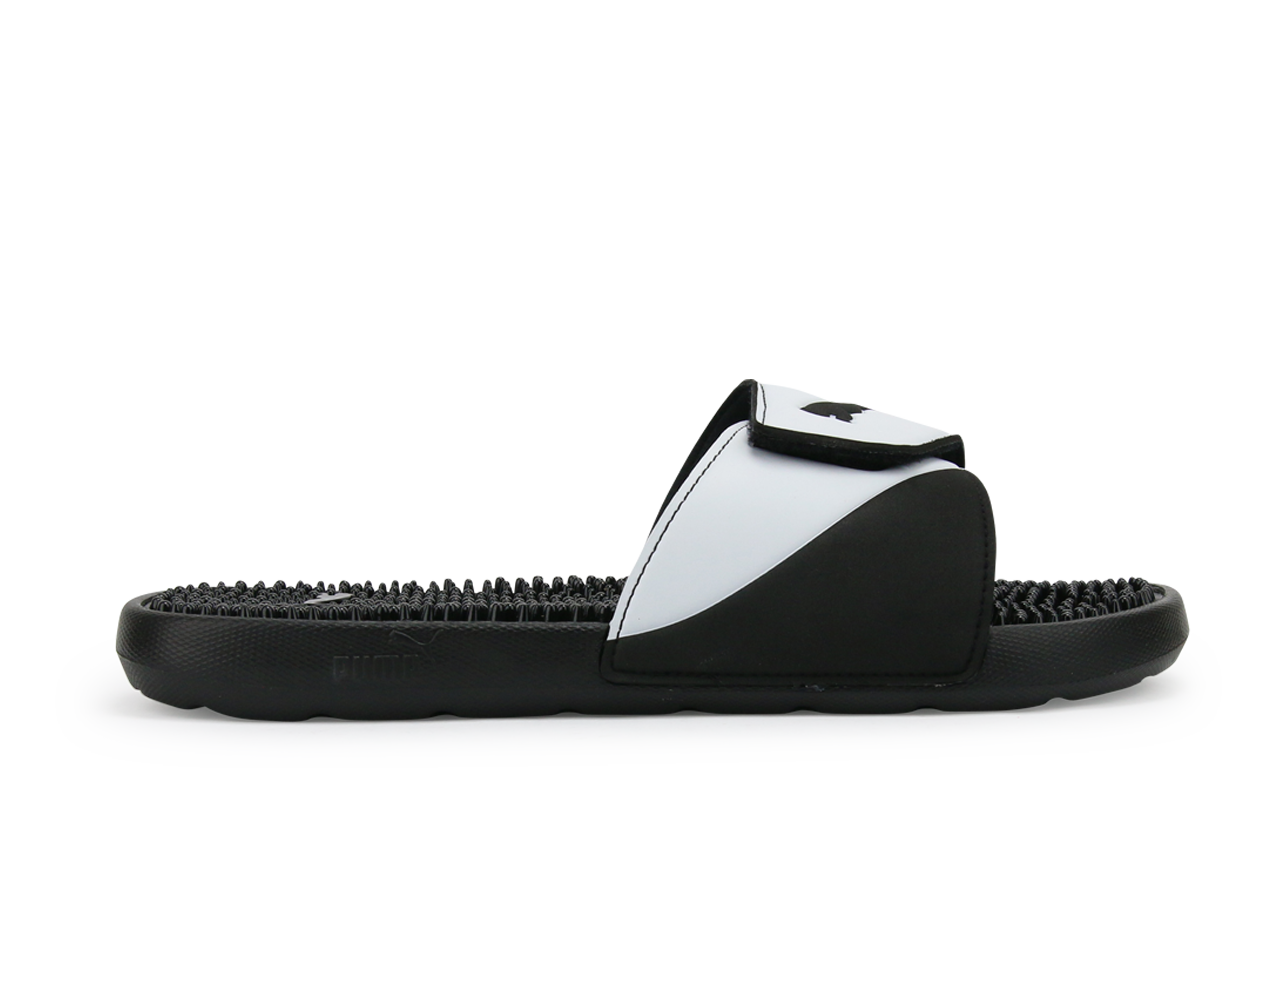 PUMA Men's StarCat TPR Sandals Black/White